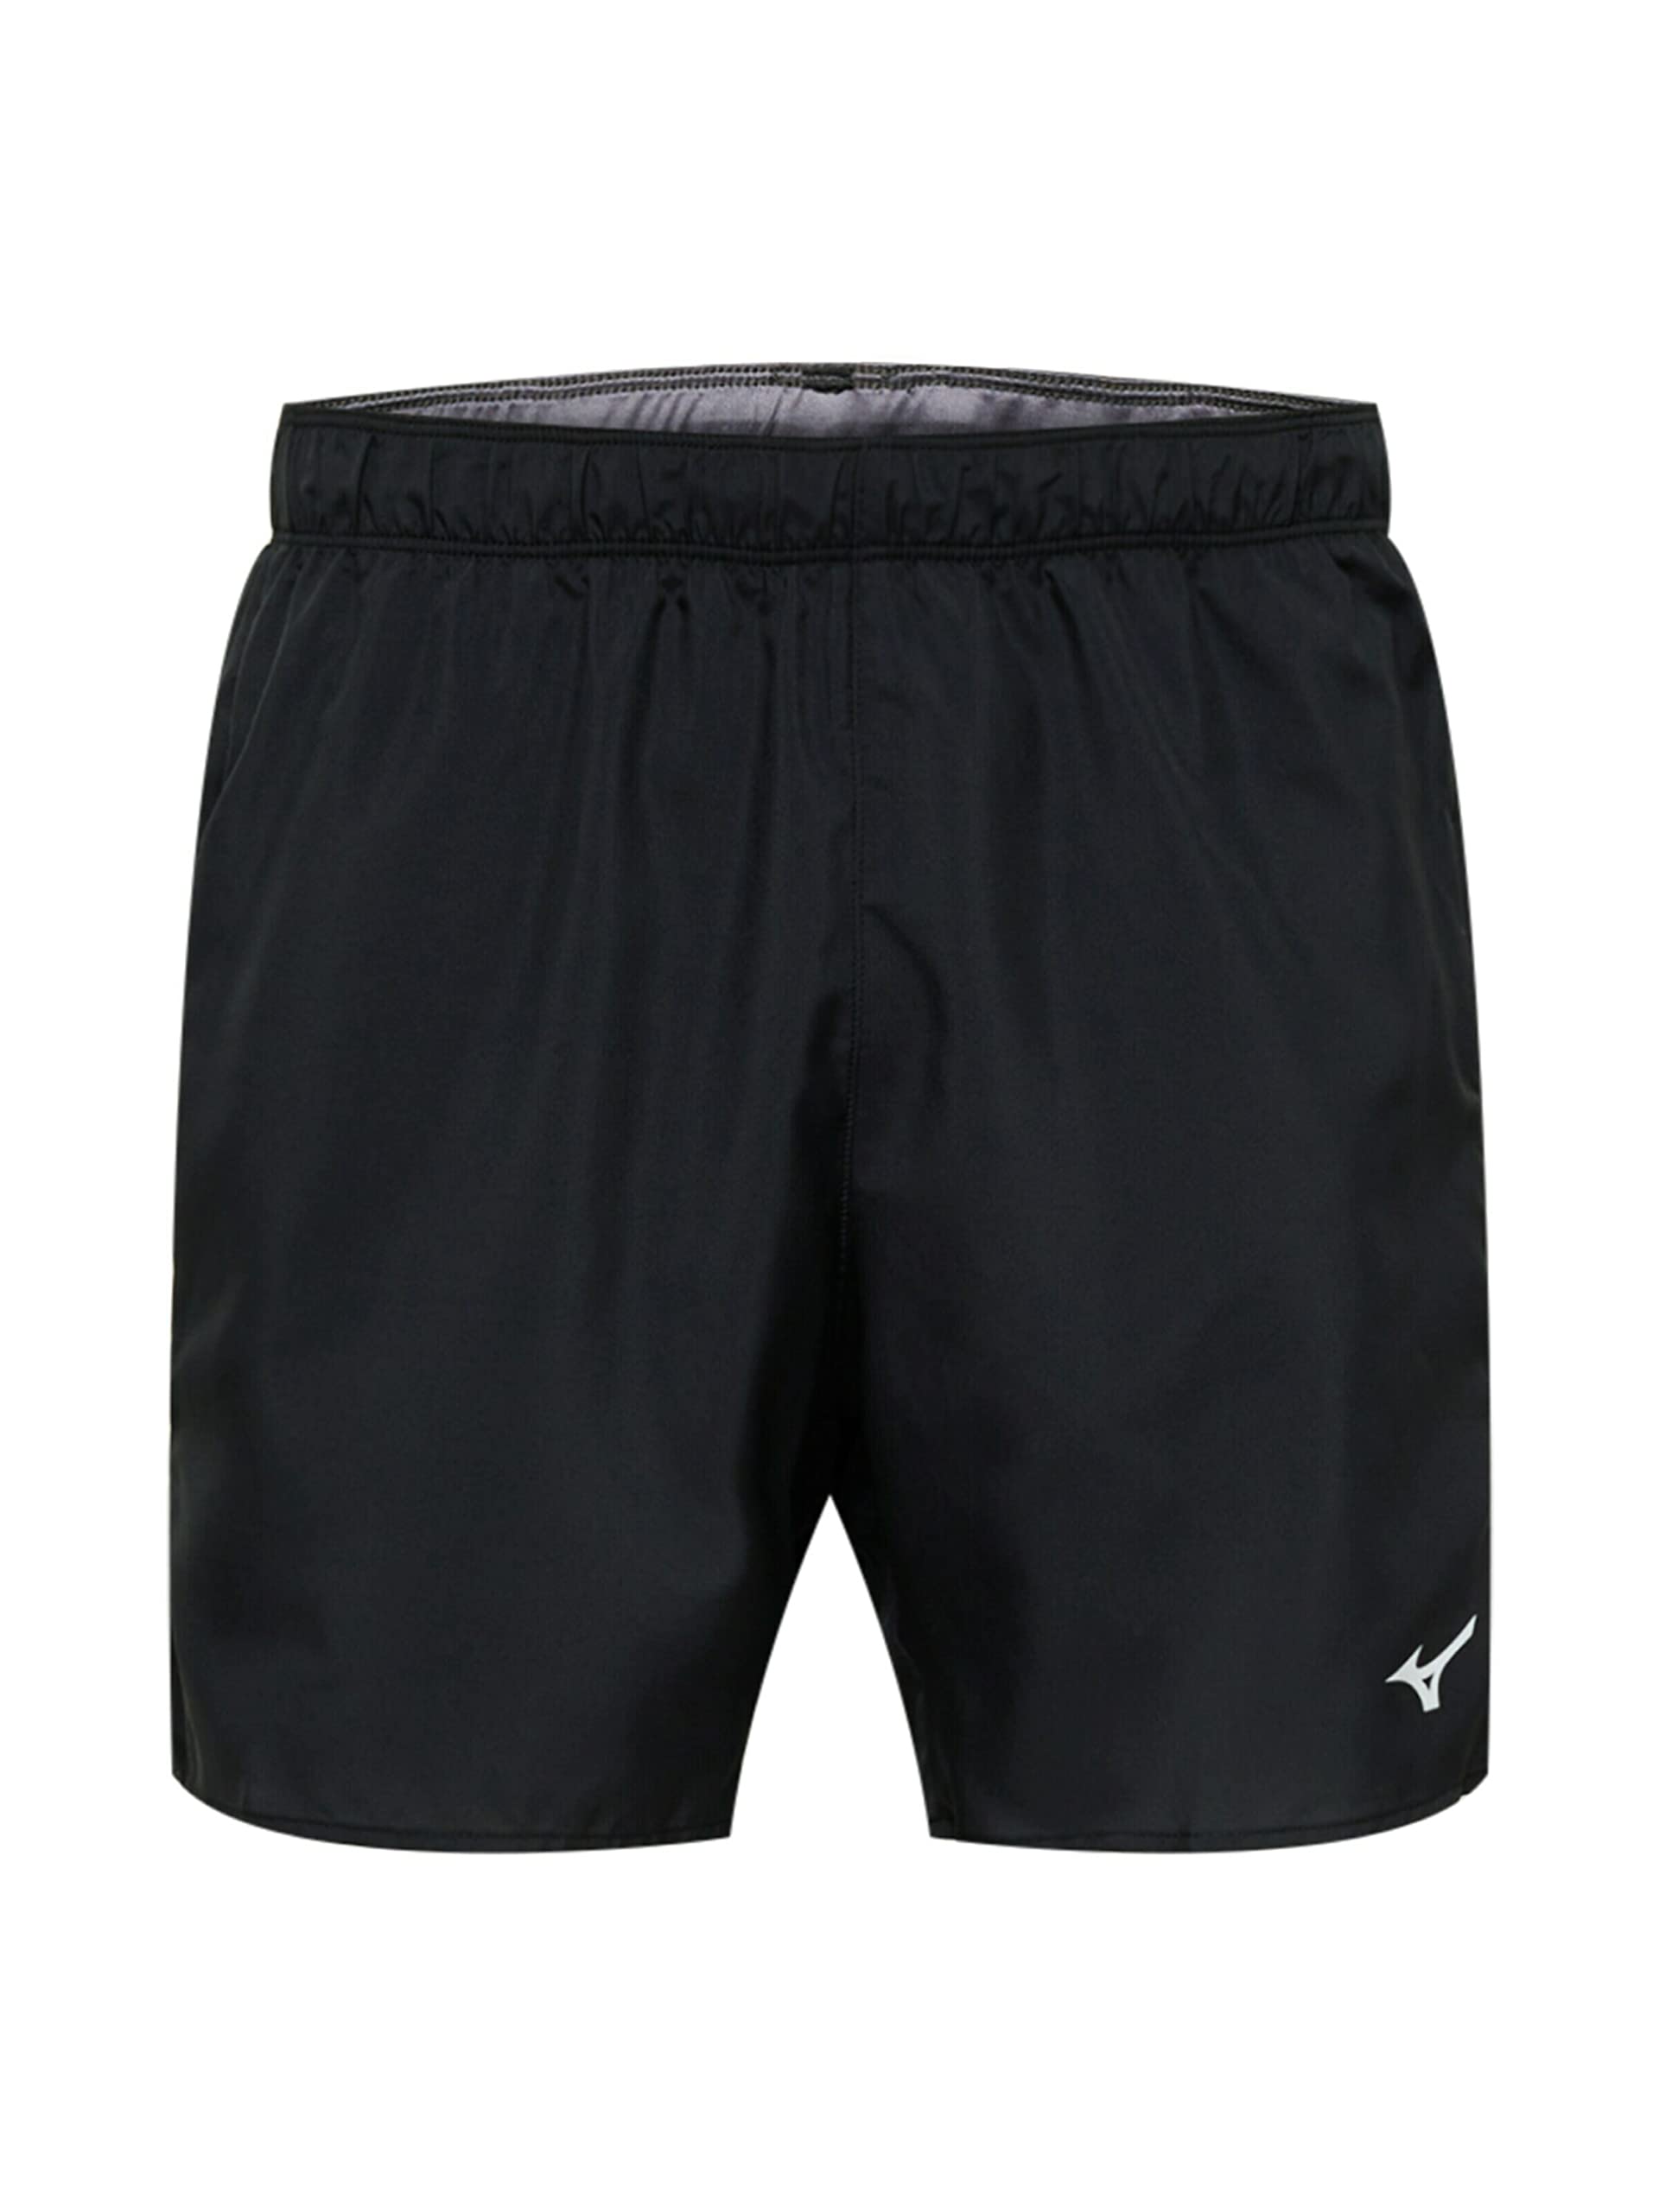 Mizuno Herren Core 5.5 Shorts, Black, XL